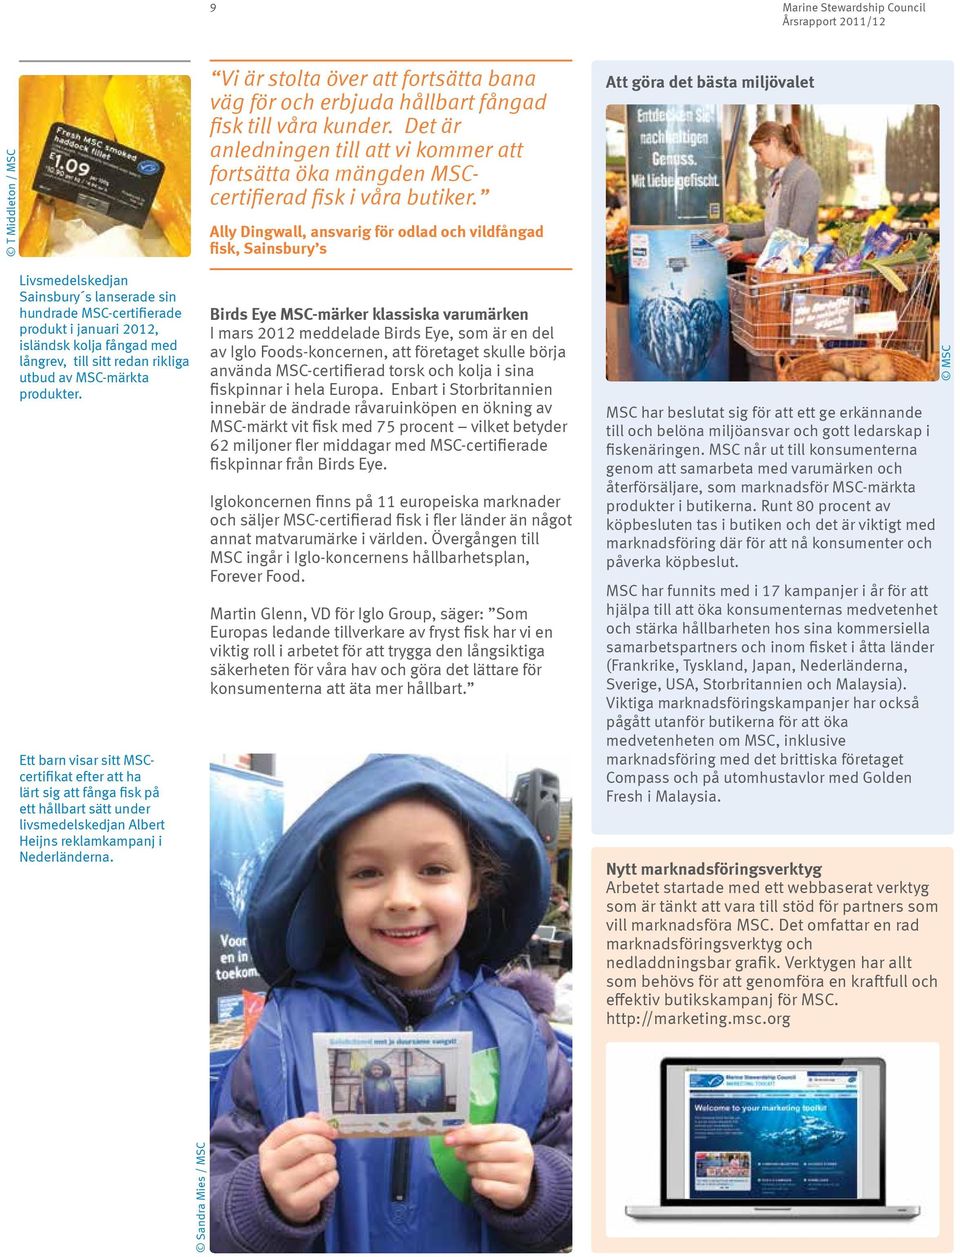 Ett barn visar sitt MSCcertifikat efter att ha lärt sig att fånga fisk på ett hållbart sätt under livsmedelskedjan Albert Heijns reklamkampanj i Nederländerna.